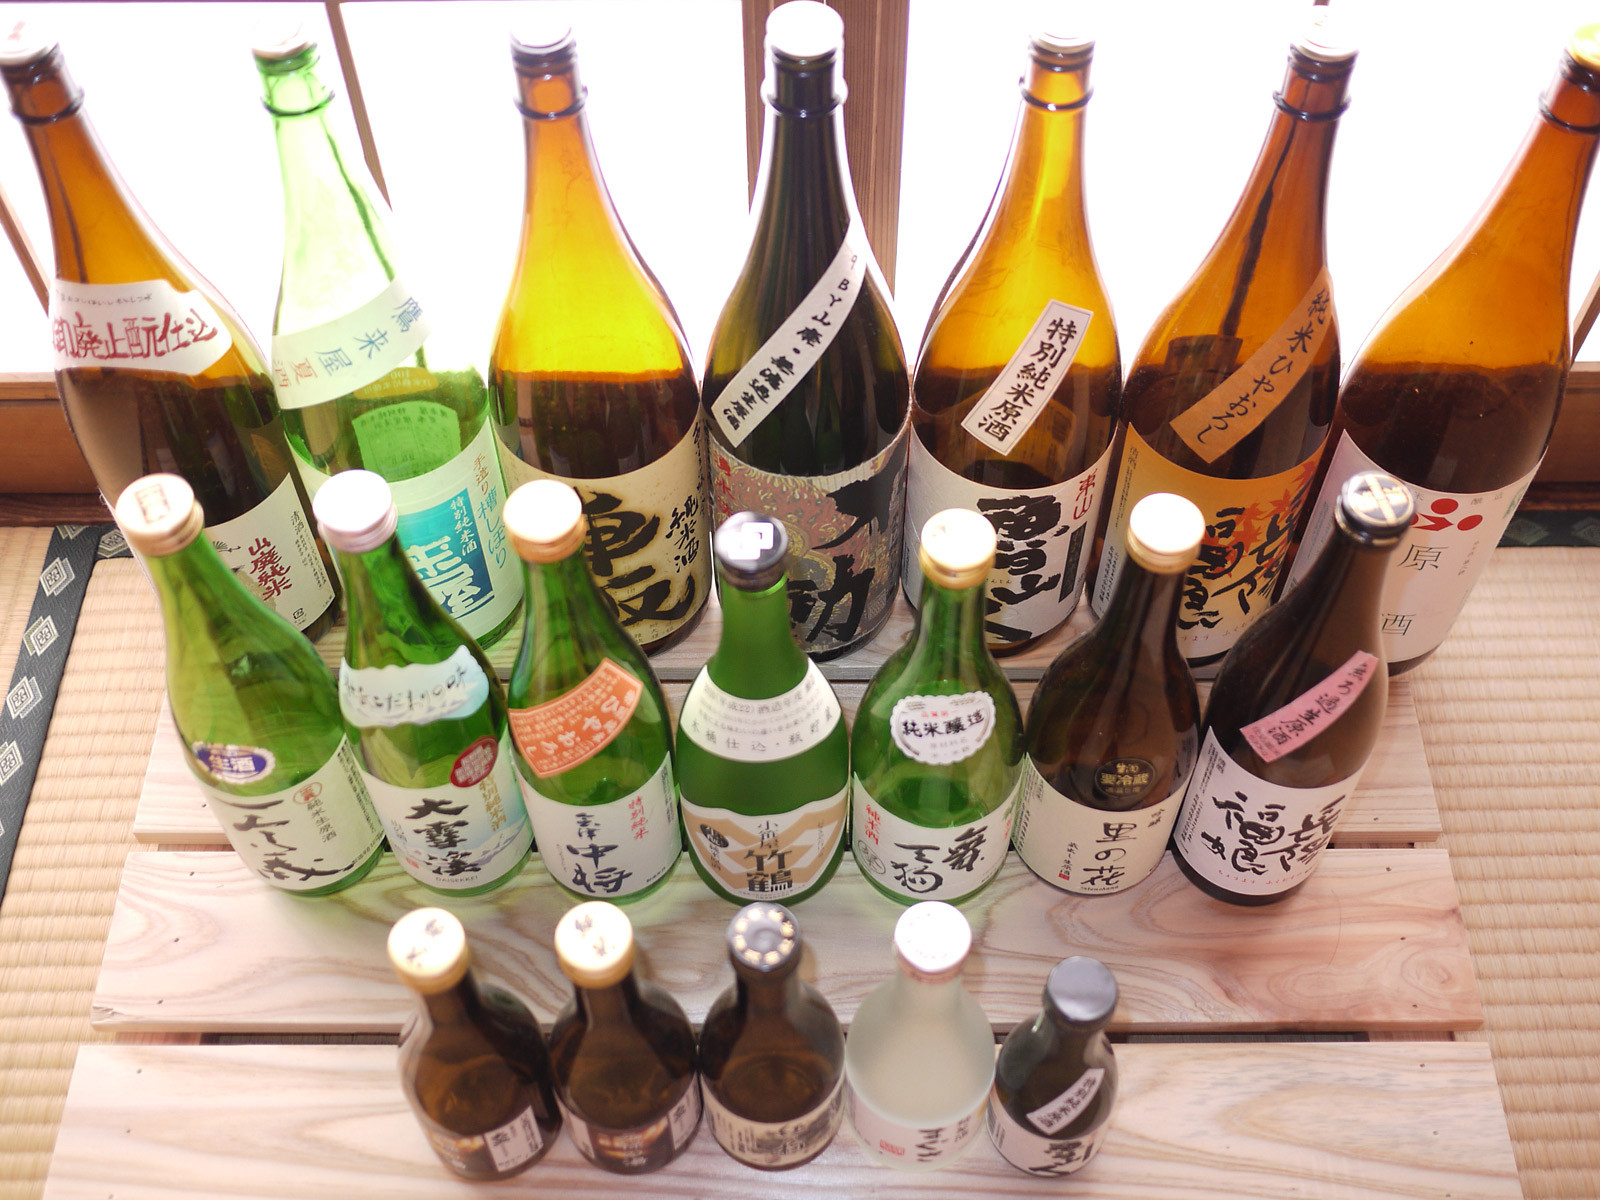 2014年下半期に呑んだ日本酒たち